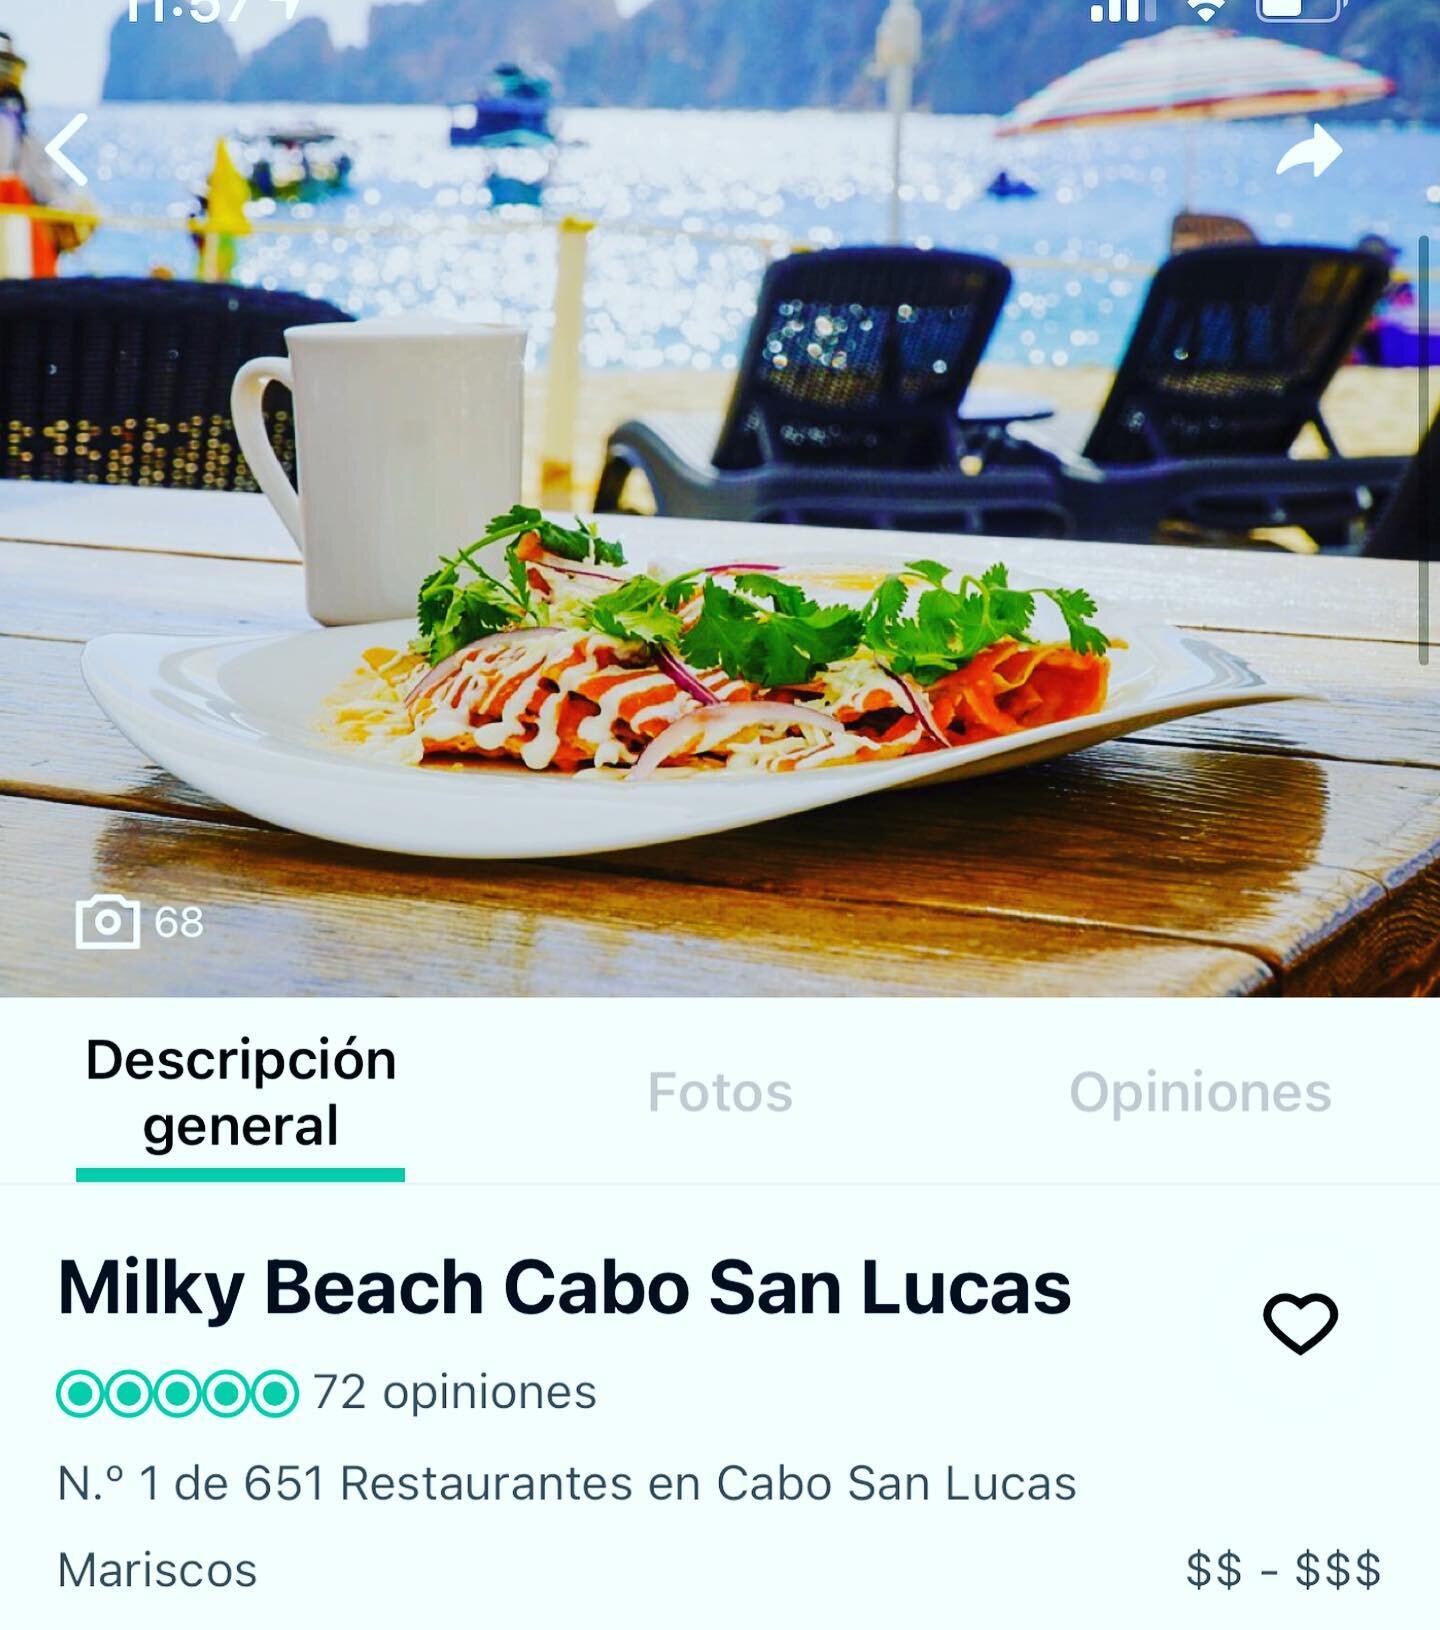 El staff de @milkybeachcabo esta celebrando que #TripAdvisor nos honra con el Primer Lugar de Restaurantes en Cabo San Lucas. 

Todo esto gracias al equipo de trabajo que desde las 6:00 am est&aacute; preparando tus gustos culinarios favoritos, las s